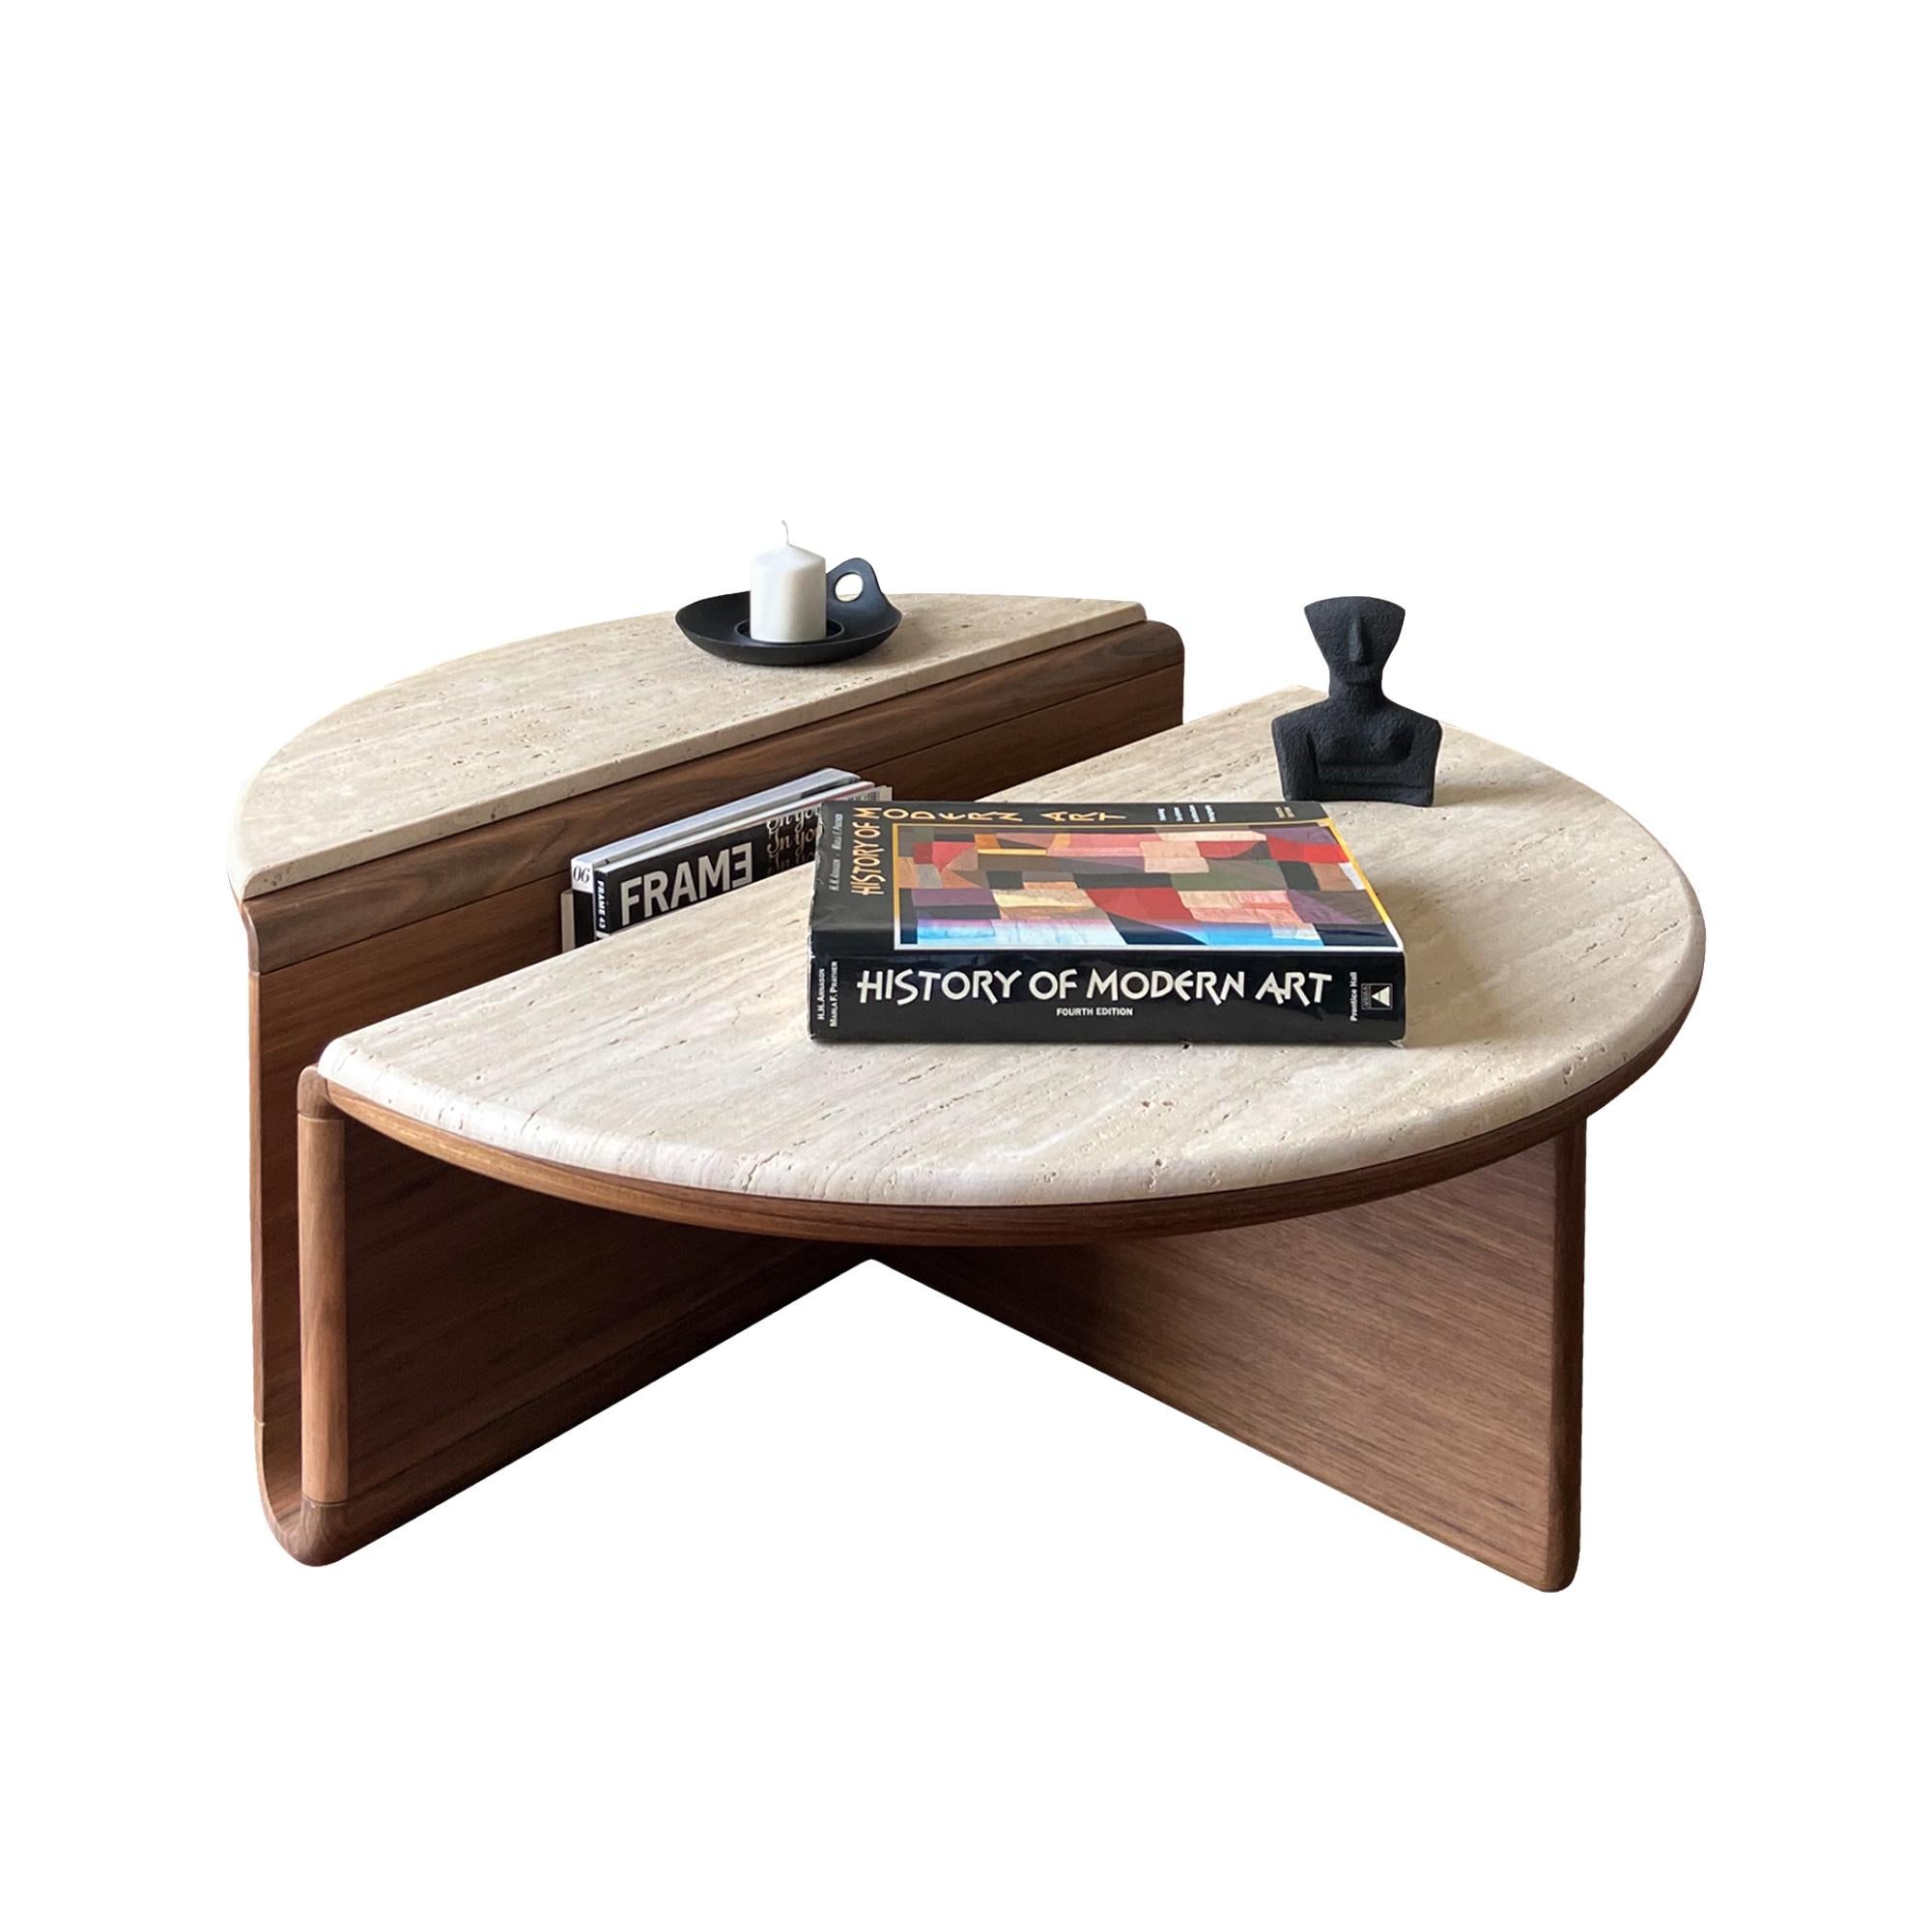 Kanyon es una auténtica mesa de centro que combina funcionalidad y postura escultural con sencillez, bellos materiales y exquisita artesanía. 

Inspirado en la belleza topográfica de las estructuras de los cañones, el diseño traduce las